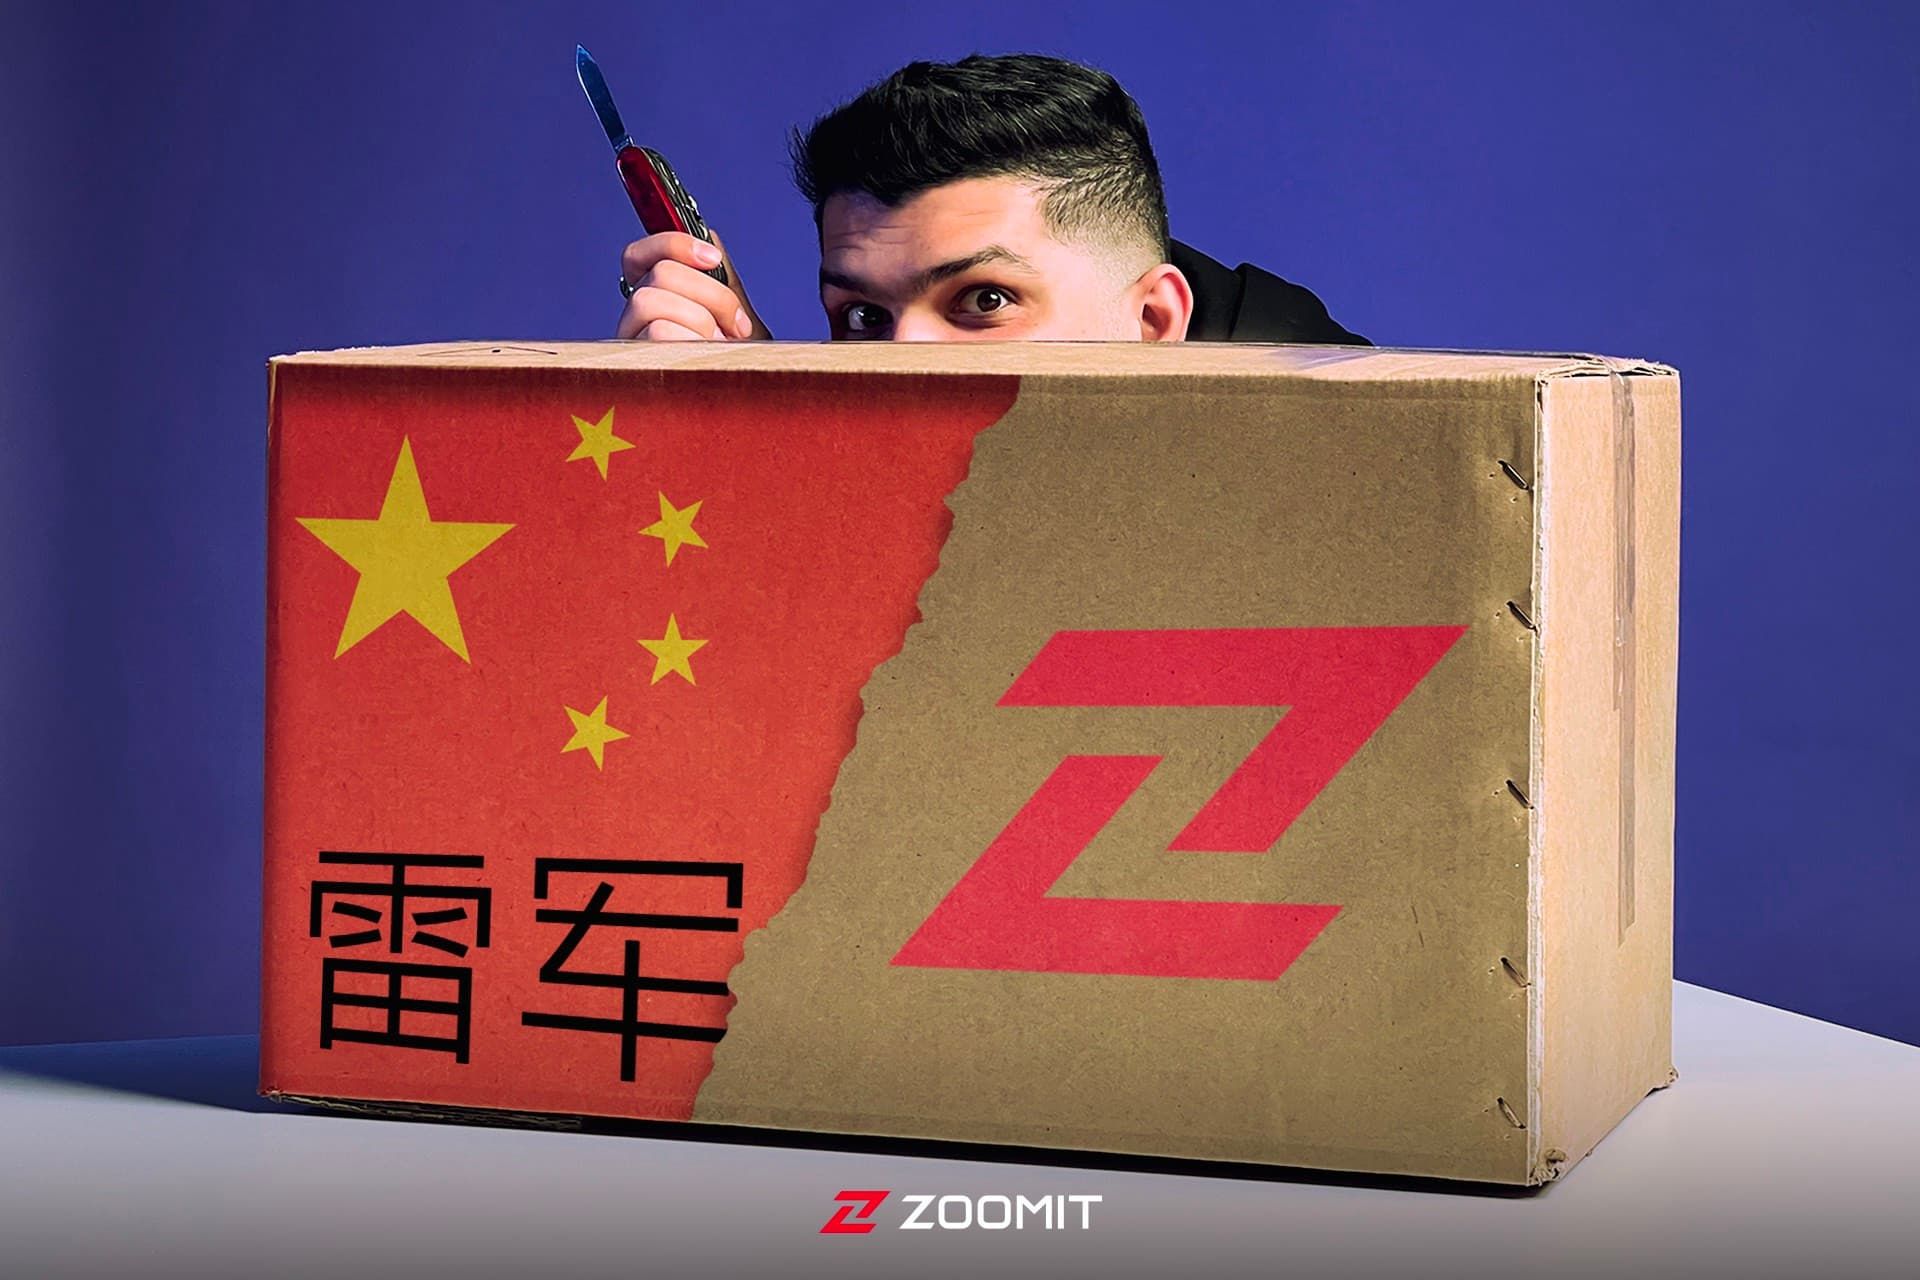 پسر جوان در پشت جعبه اسرار آمیز با پرچم چین